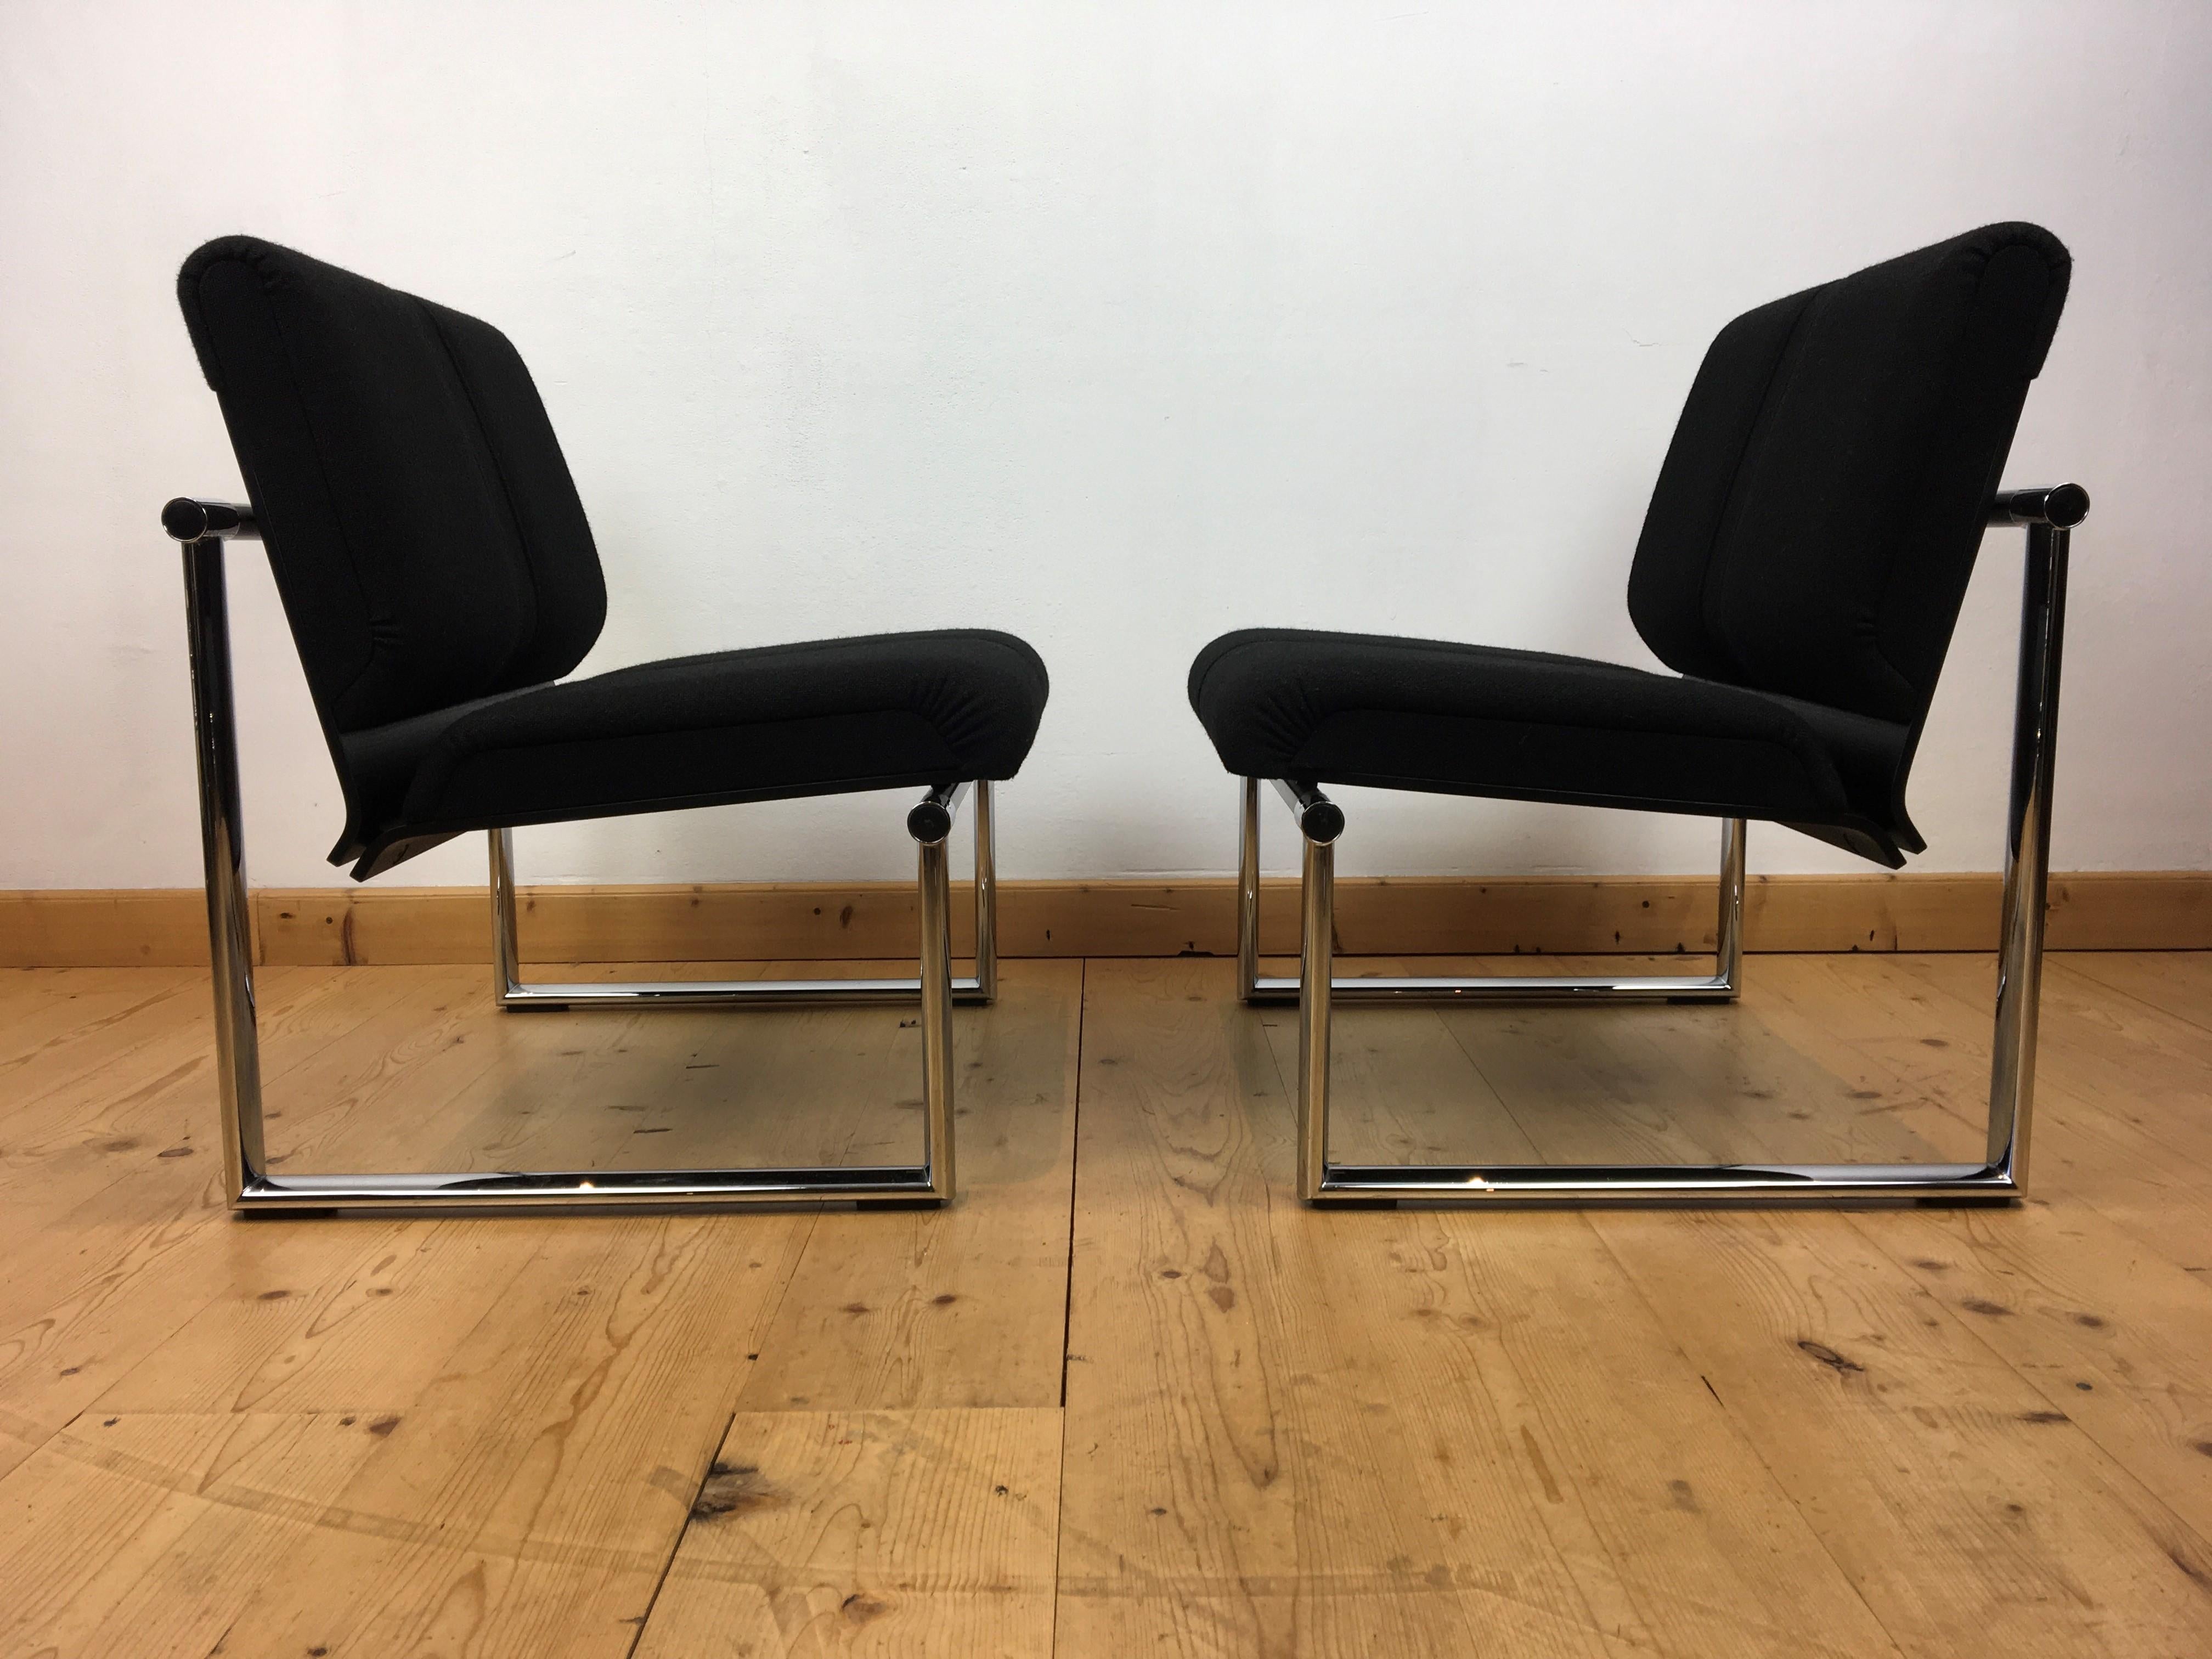 2er-Set Vintage-Design-Sessel von Albert Stohl für GIROFLEX AG. 
Diese Klubsessel stammen aus den 1980er bis 1990er Jahren.
Beide mit Originaletiketten.

Diese großen, hochwertigen Sessel haben ein verchromtes Metallgestell mit schwarzer